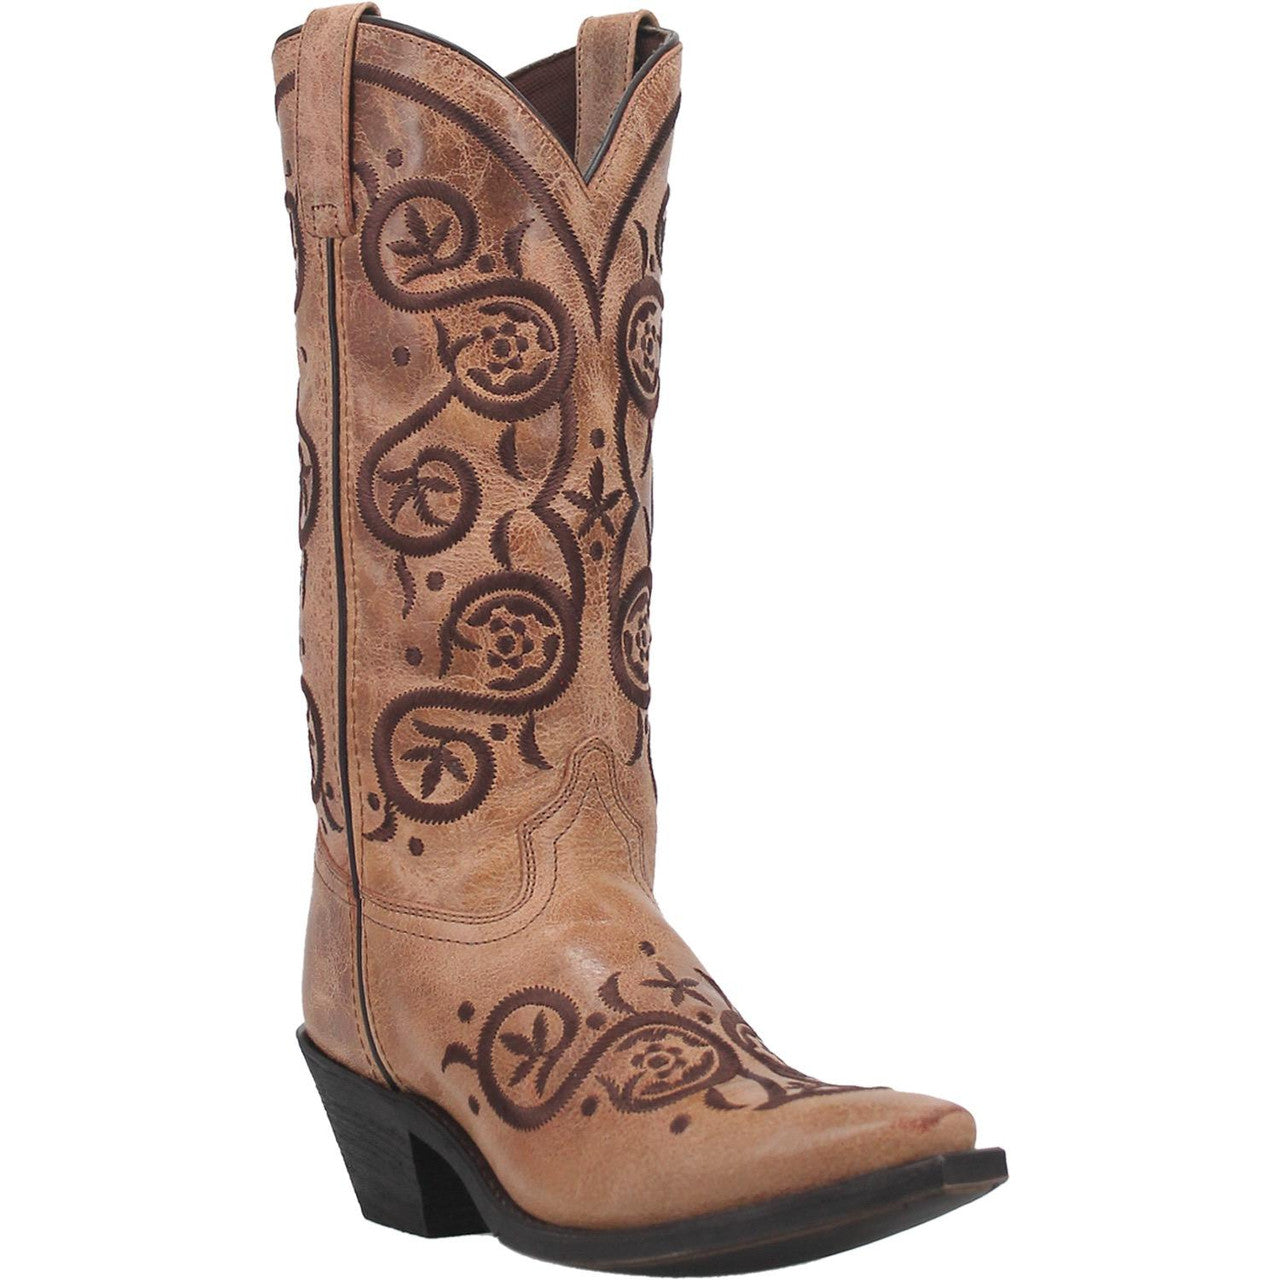 Laredo Women's Boot - Whirlaway (Taupe) - 52422